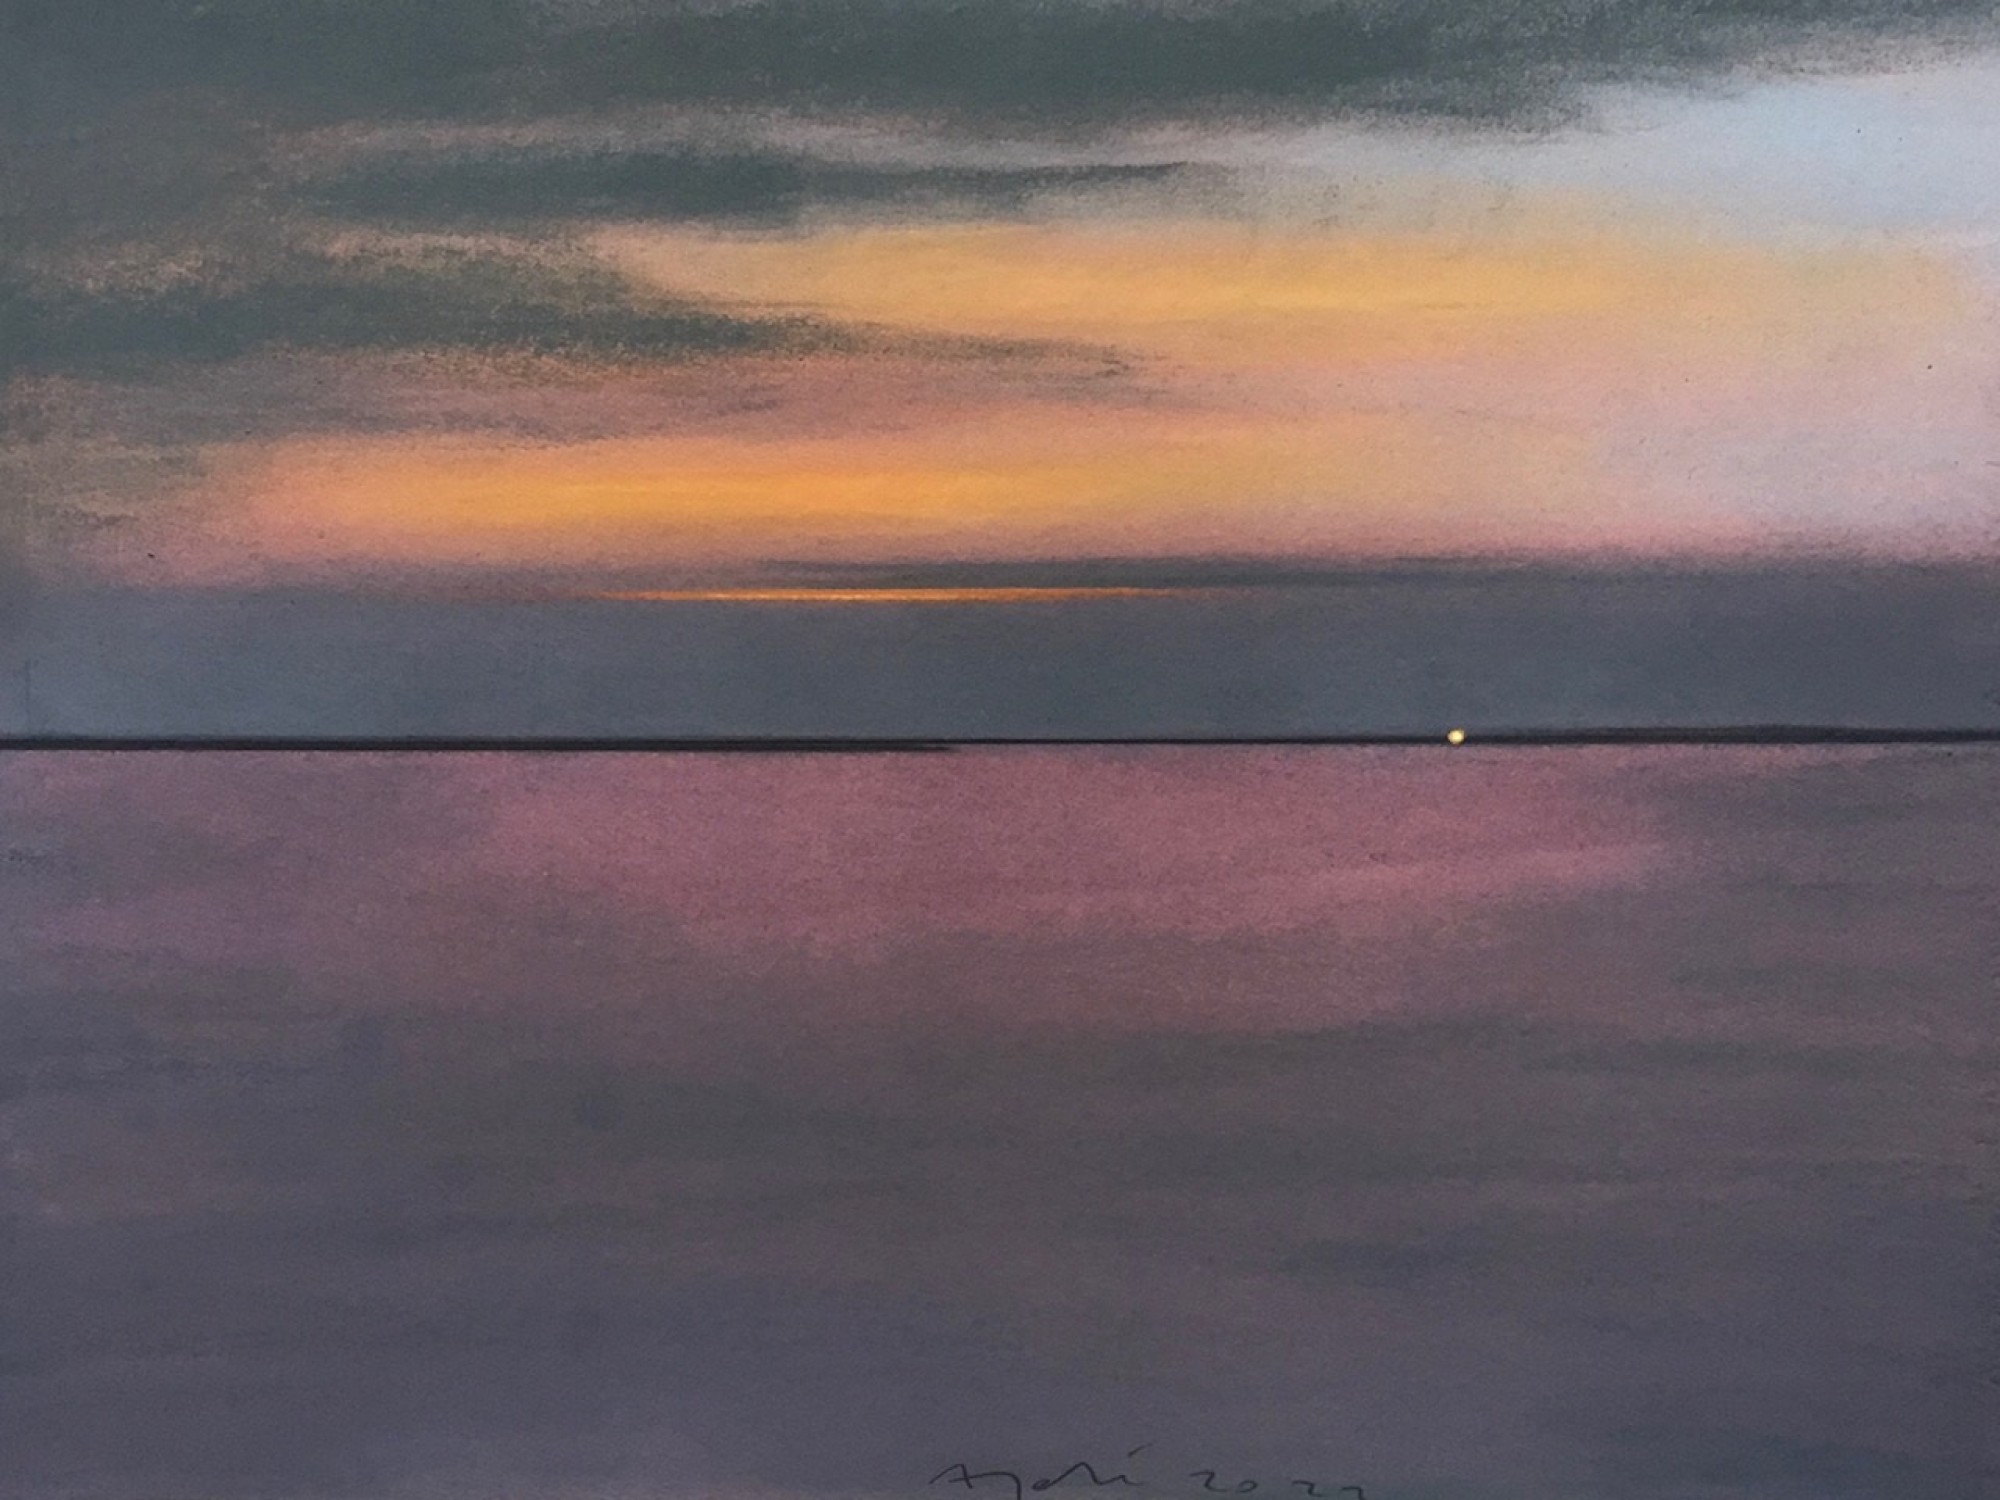 Pastellgemälde, das einen letzten Lichtschimmer am Horizont zeigt, nachdem die Sonne unter dem
                                          Meer untergegangen ist.